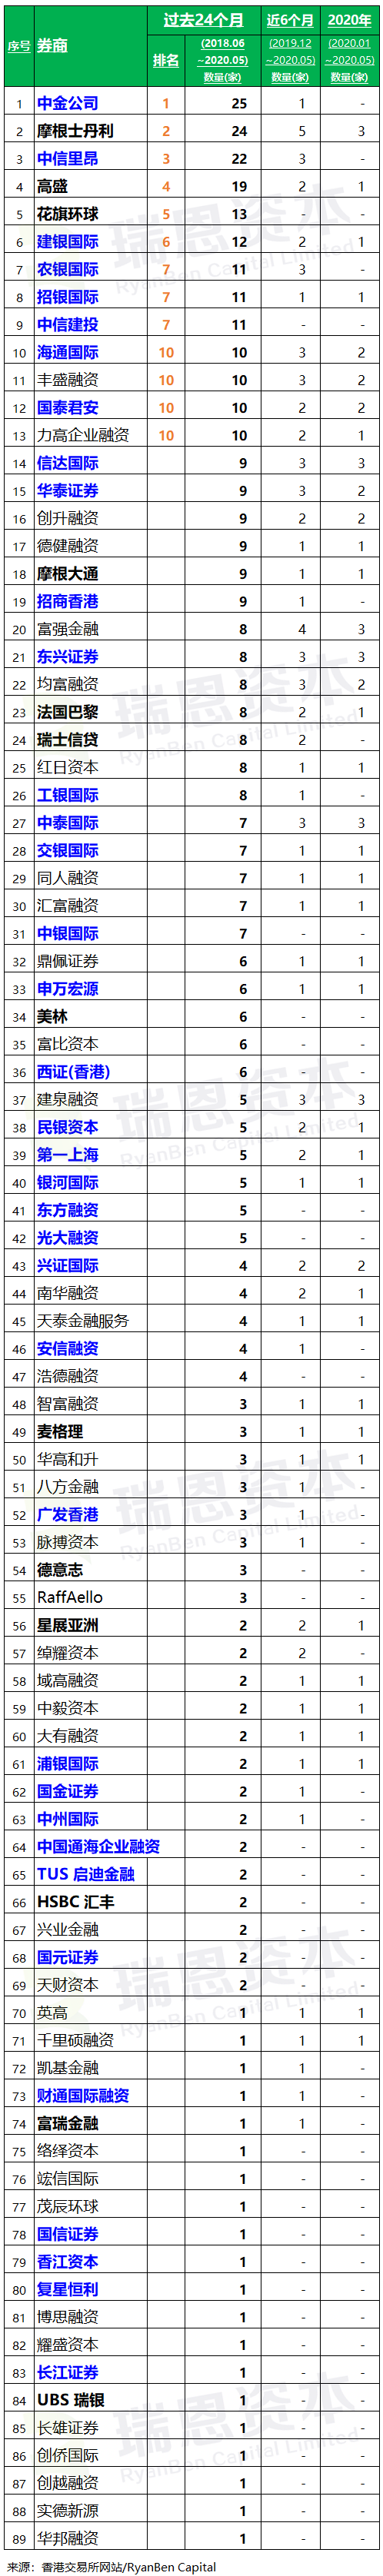 香港 IPO中介机构排行榜 (过去24个月：2018年6月-2020年5月)